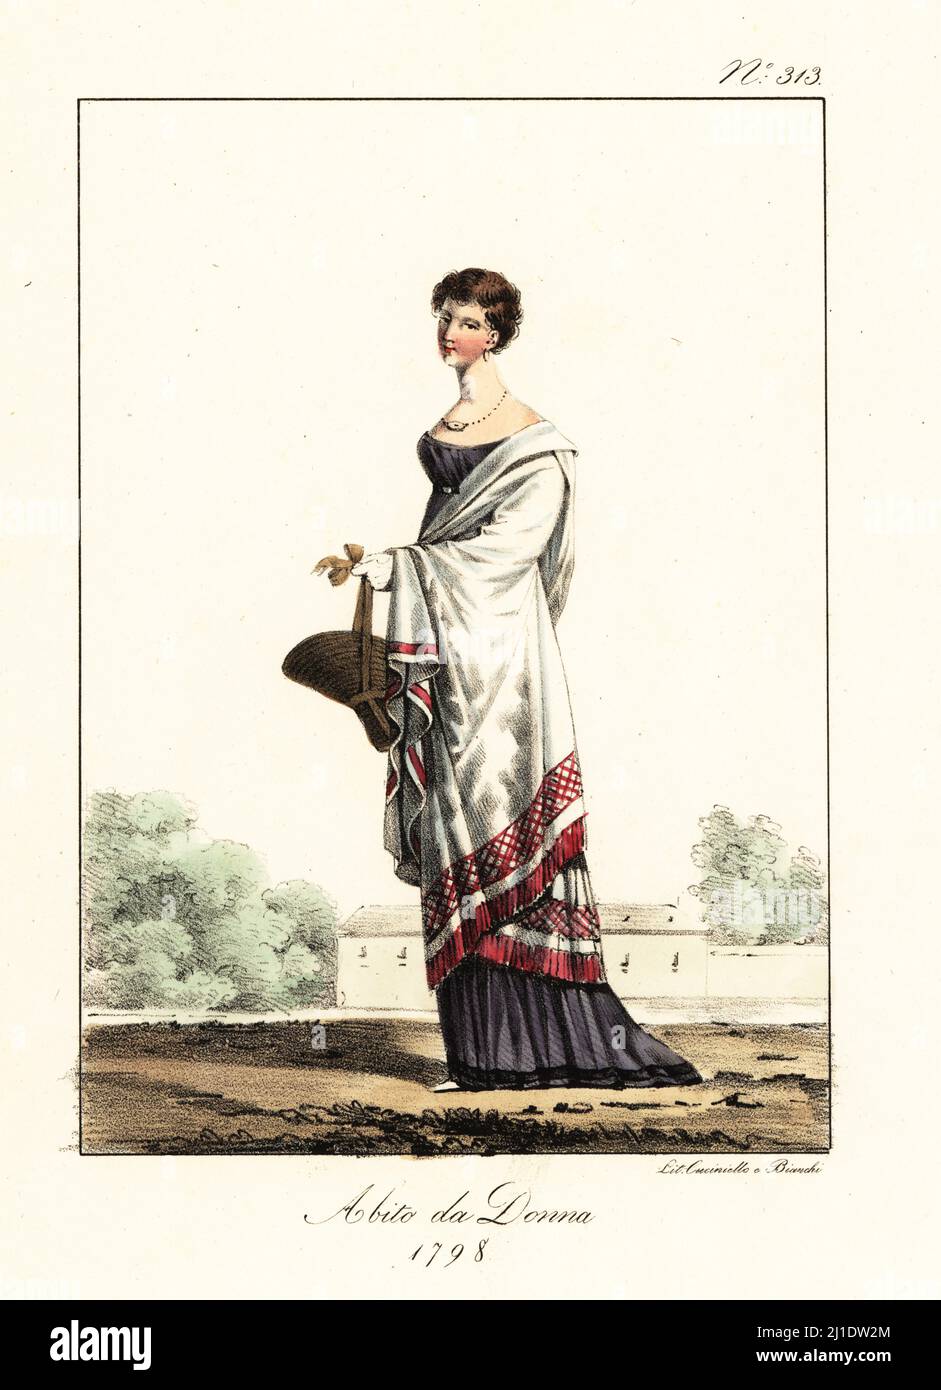 Costume d'une française à la mode ou Merveilleuse, Directoire Era, 1798.  Coupe courte à la Titus ou à la vitime, robe basse, chapeau de paille,  châle brodé. Costume de femme. Lithographie de